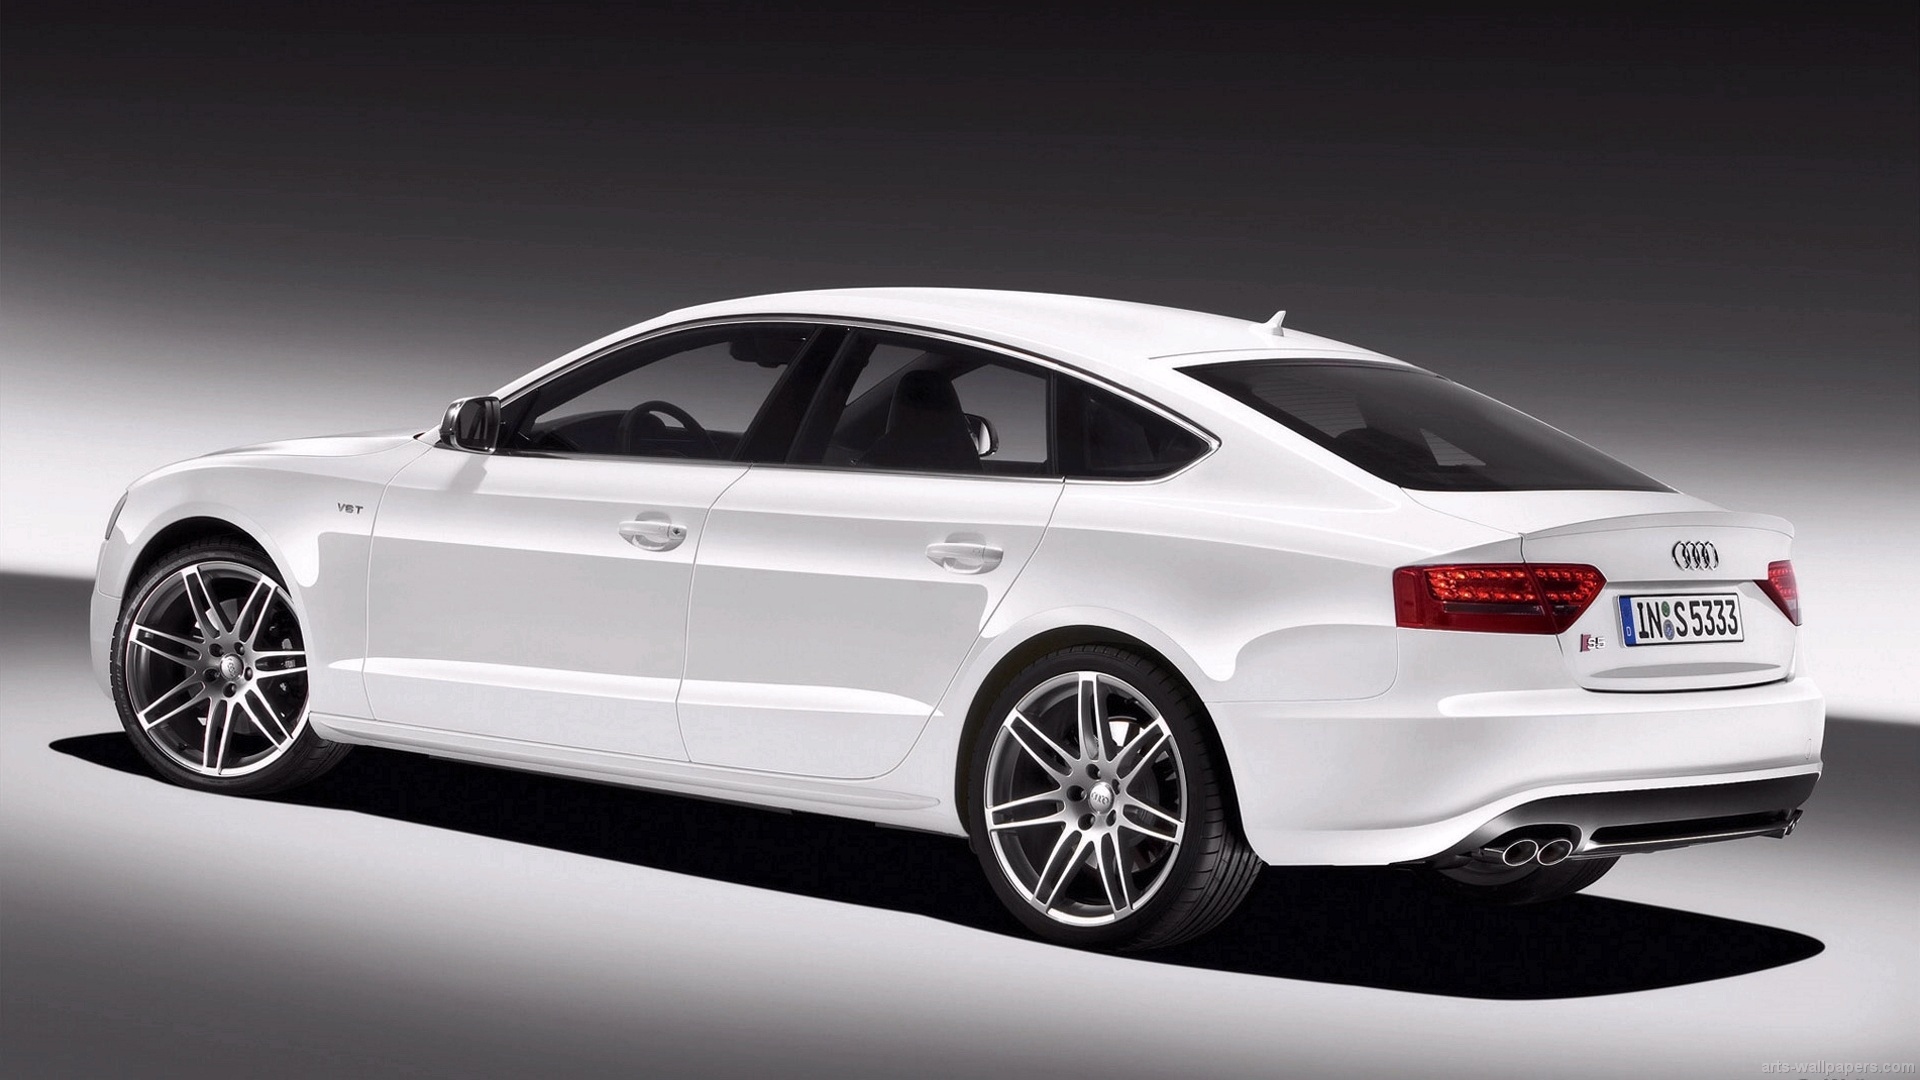 [46+] Audi HD Wallpapers 1080p on WallpaperSafari